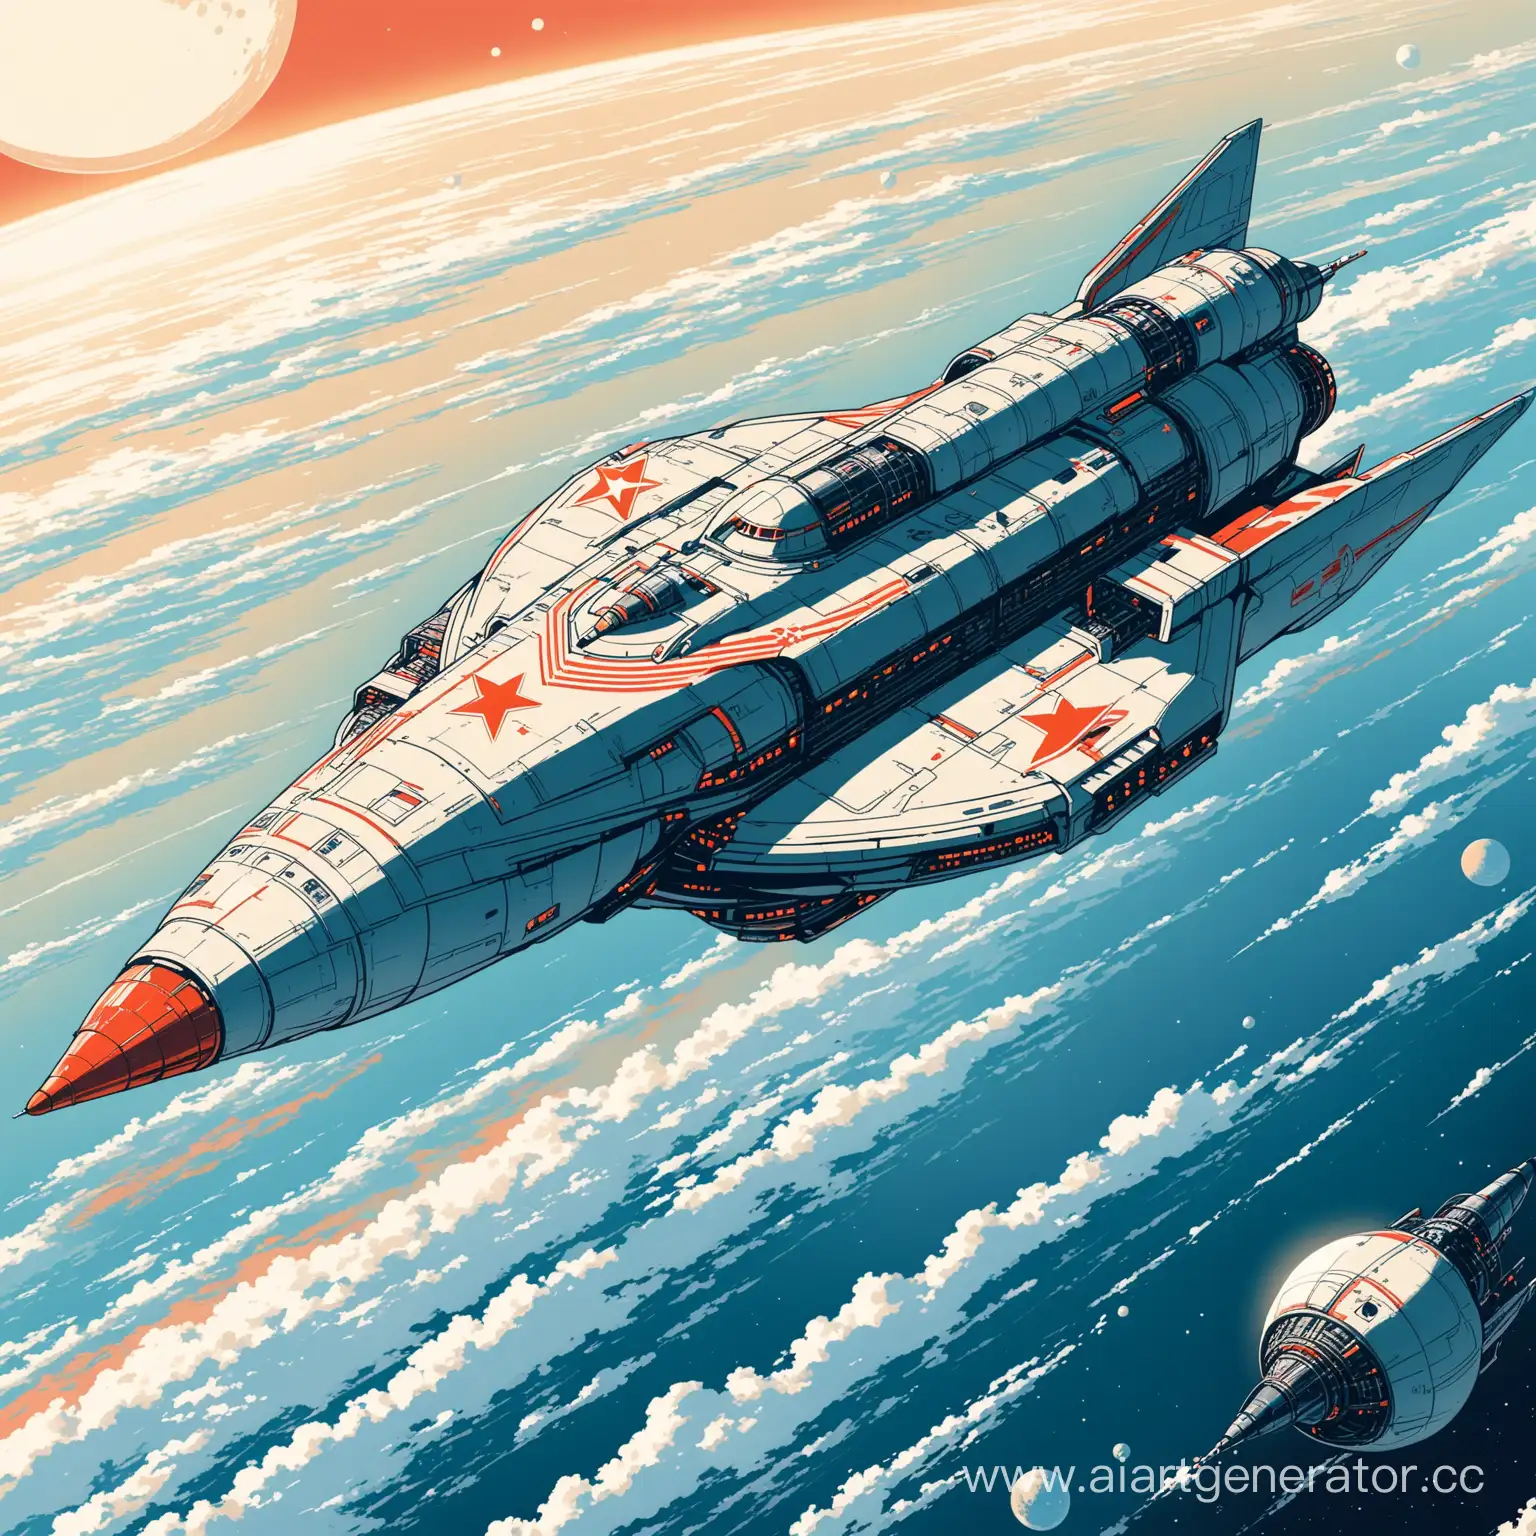 Futuristic-Soviet-Spacecraft-Exploration-Mission